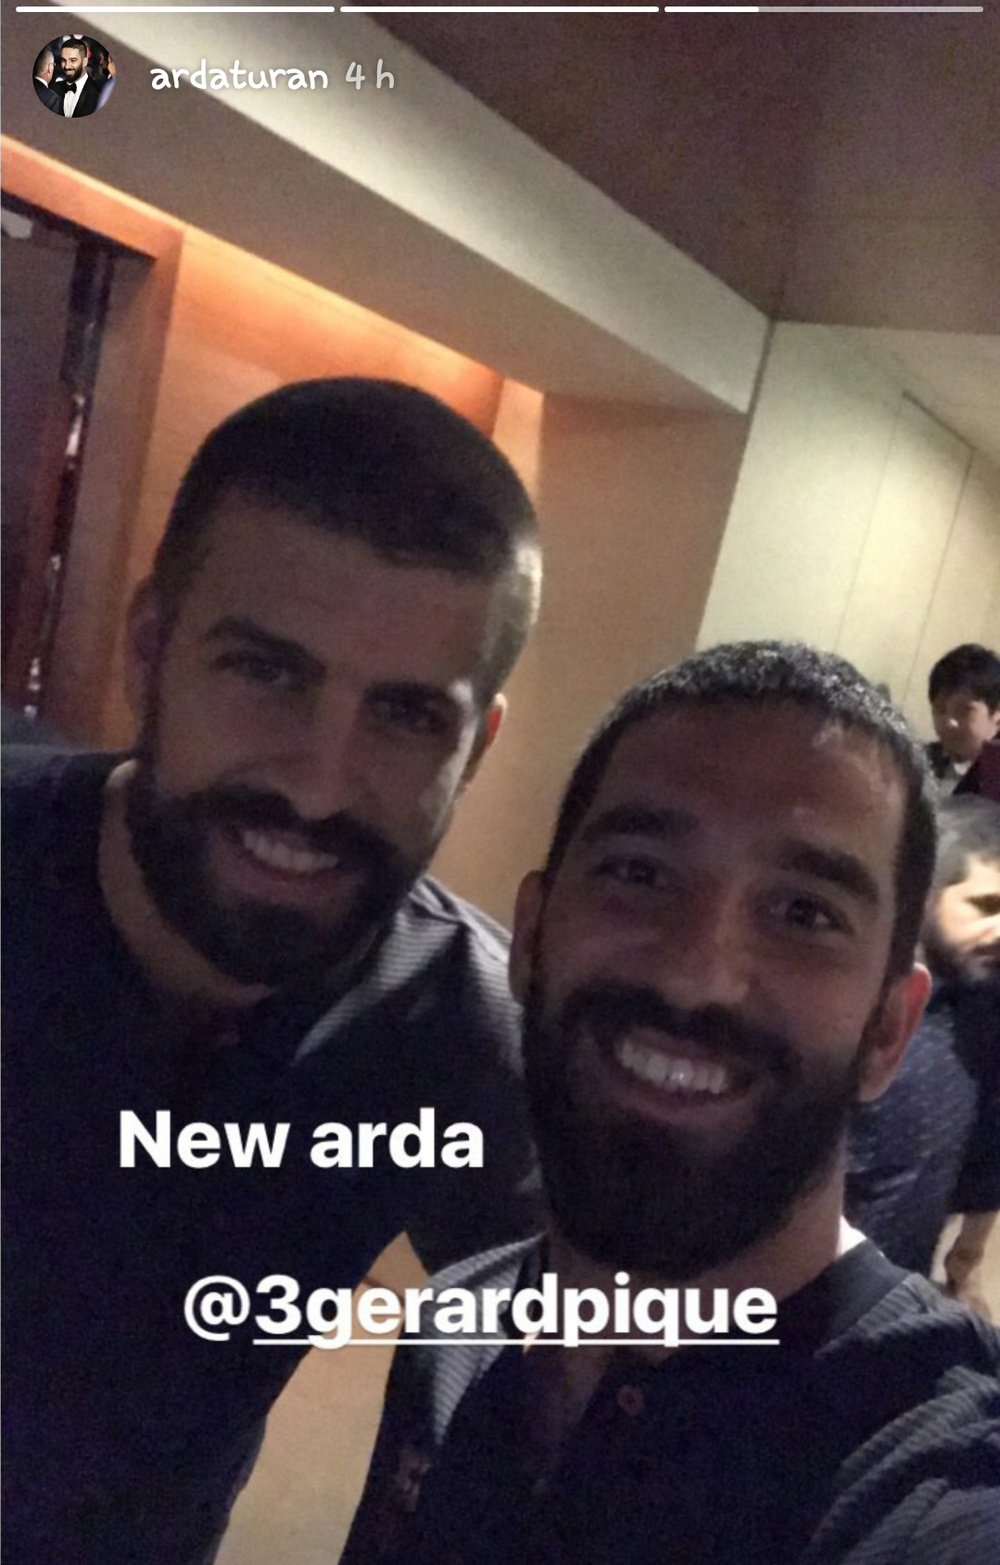 Arda Turan bromeó sobre su parecido con Piqué. Instagram